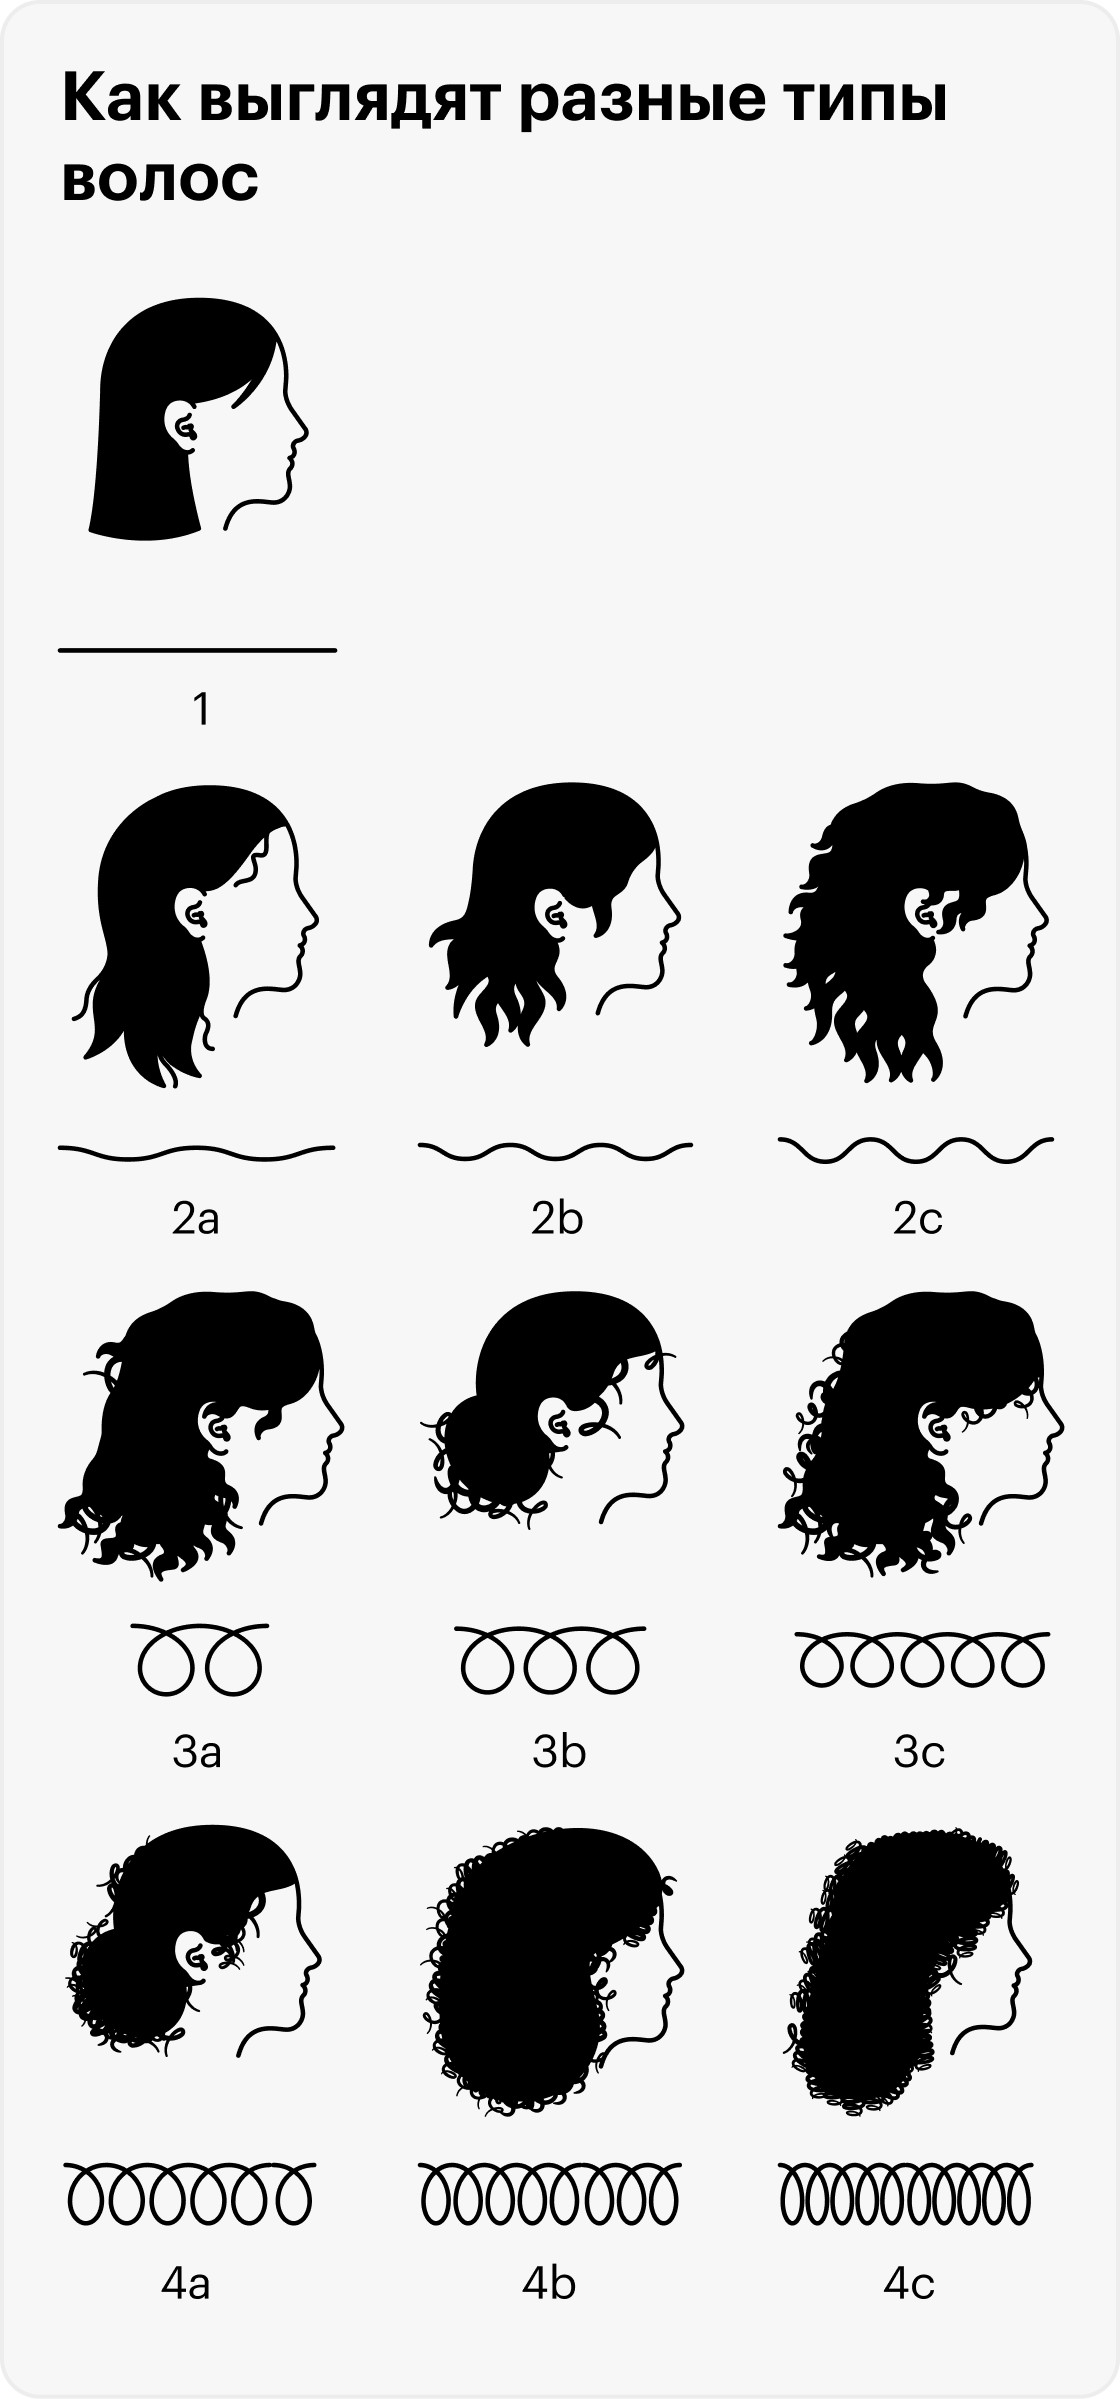 Типы волос по степени завитка: 1 — прямые волосы, 2— волнистые, 3 — кудрявые, 4 — очень кудрявые